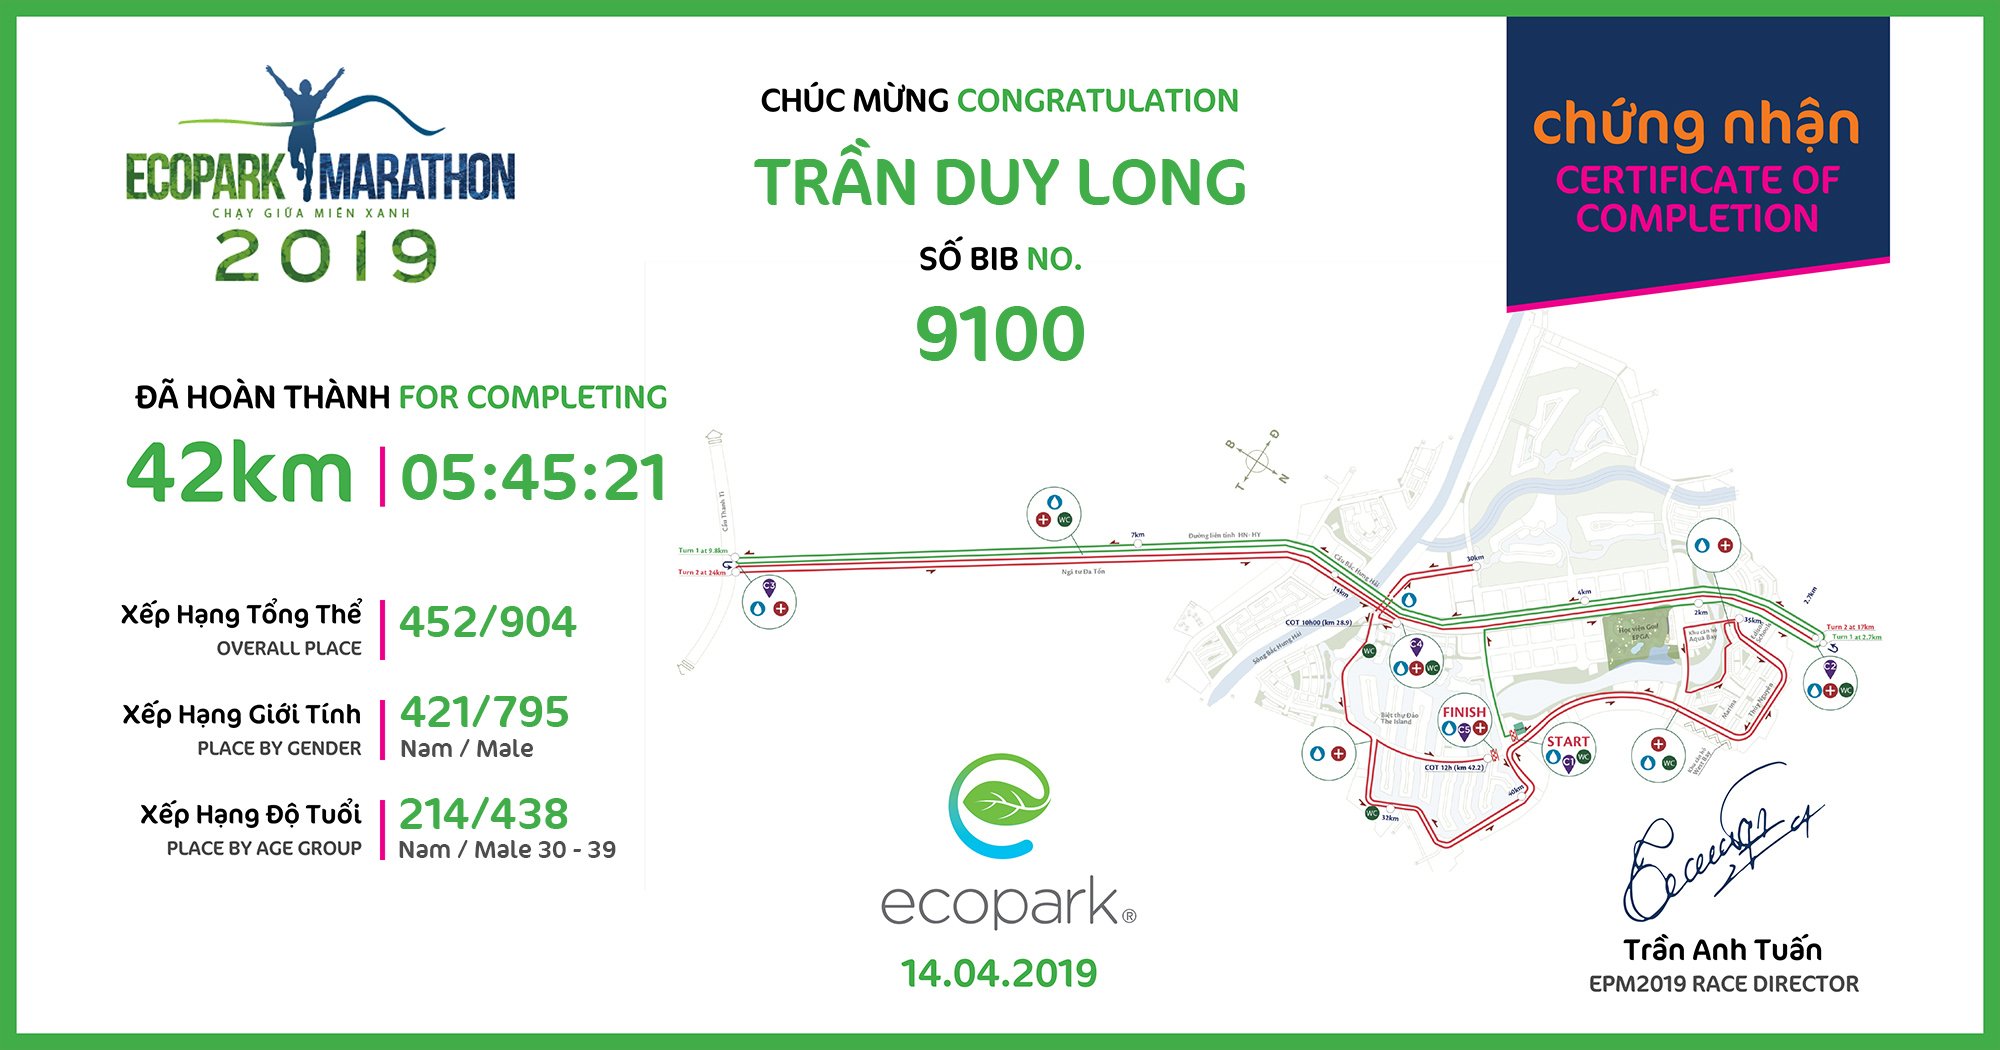 9100 - Trần Duy Long